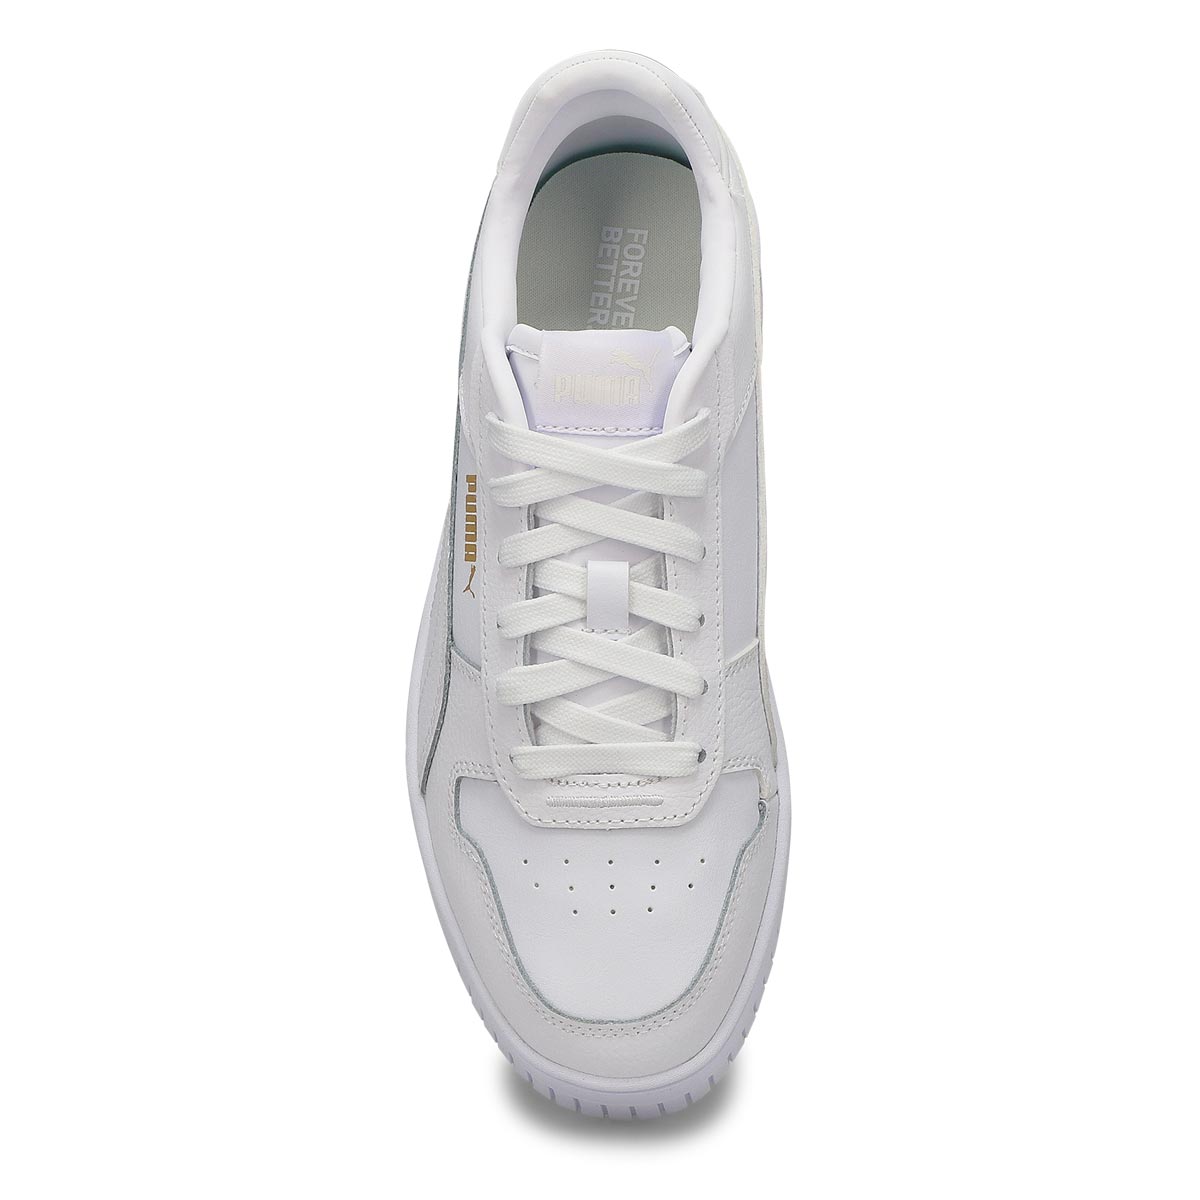 Puma Women's Carina Street Sneaker - White/Go | SoftMoc.com